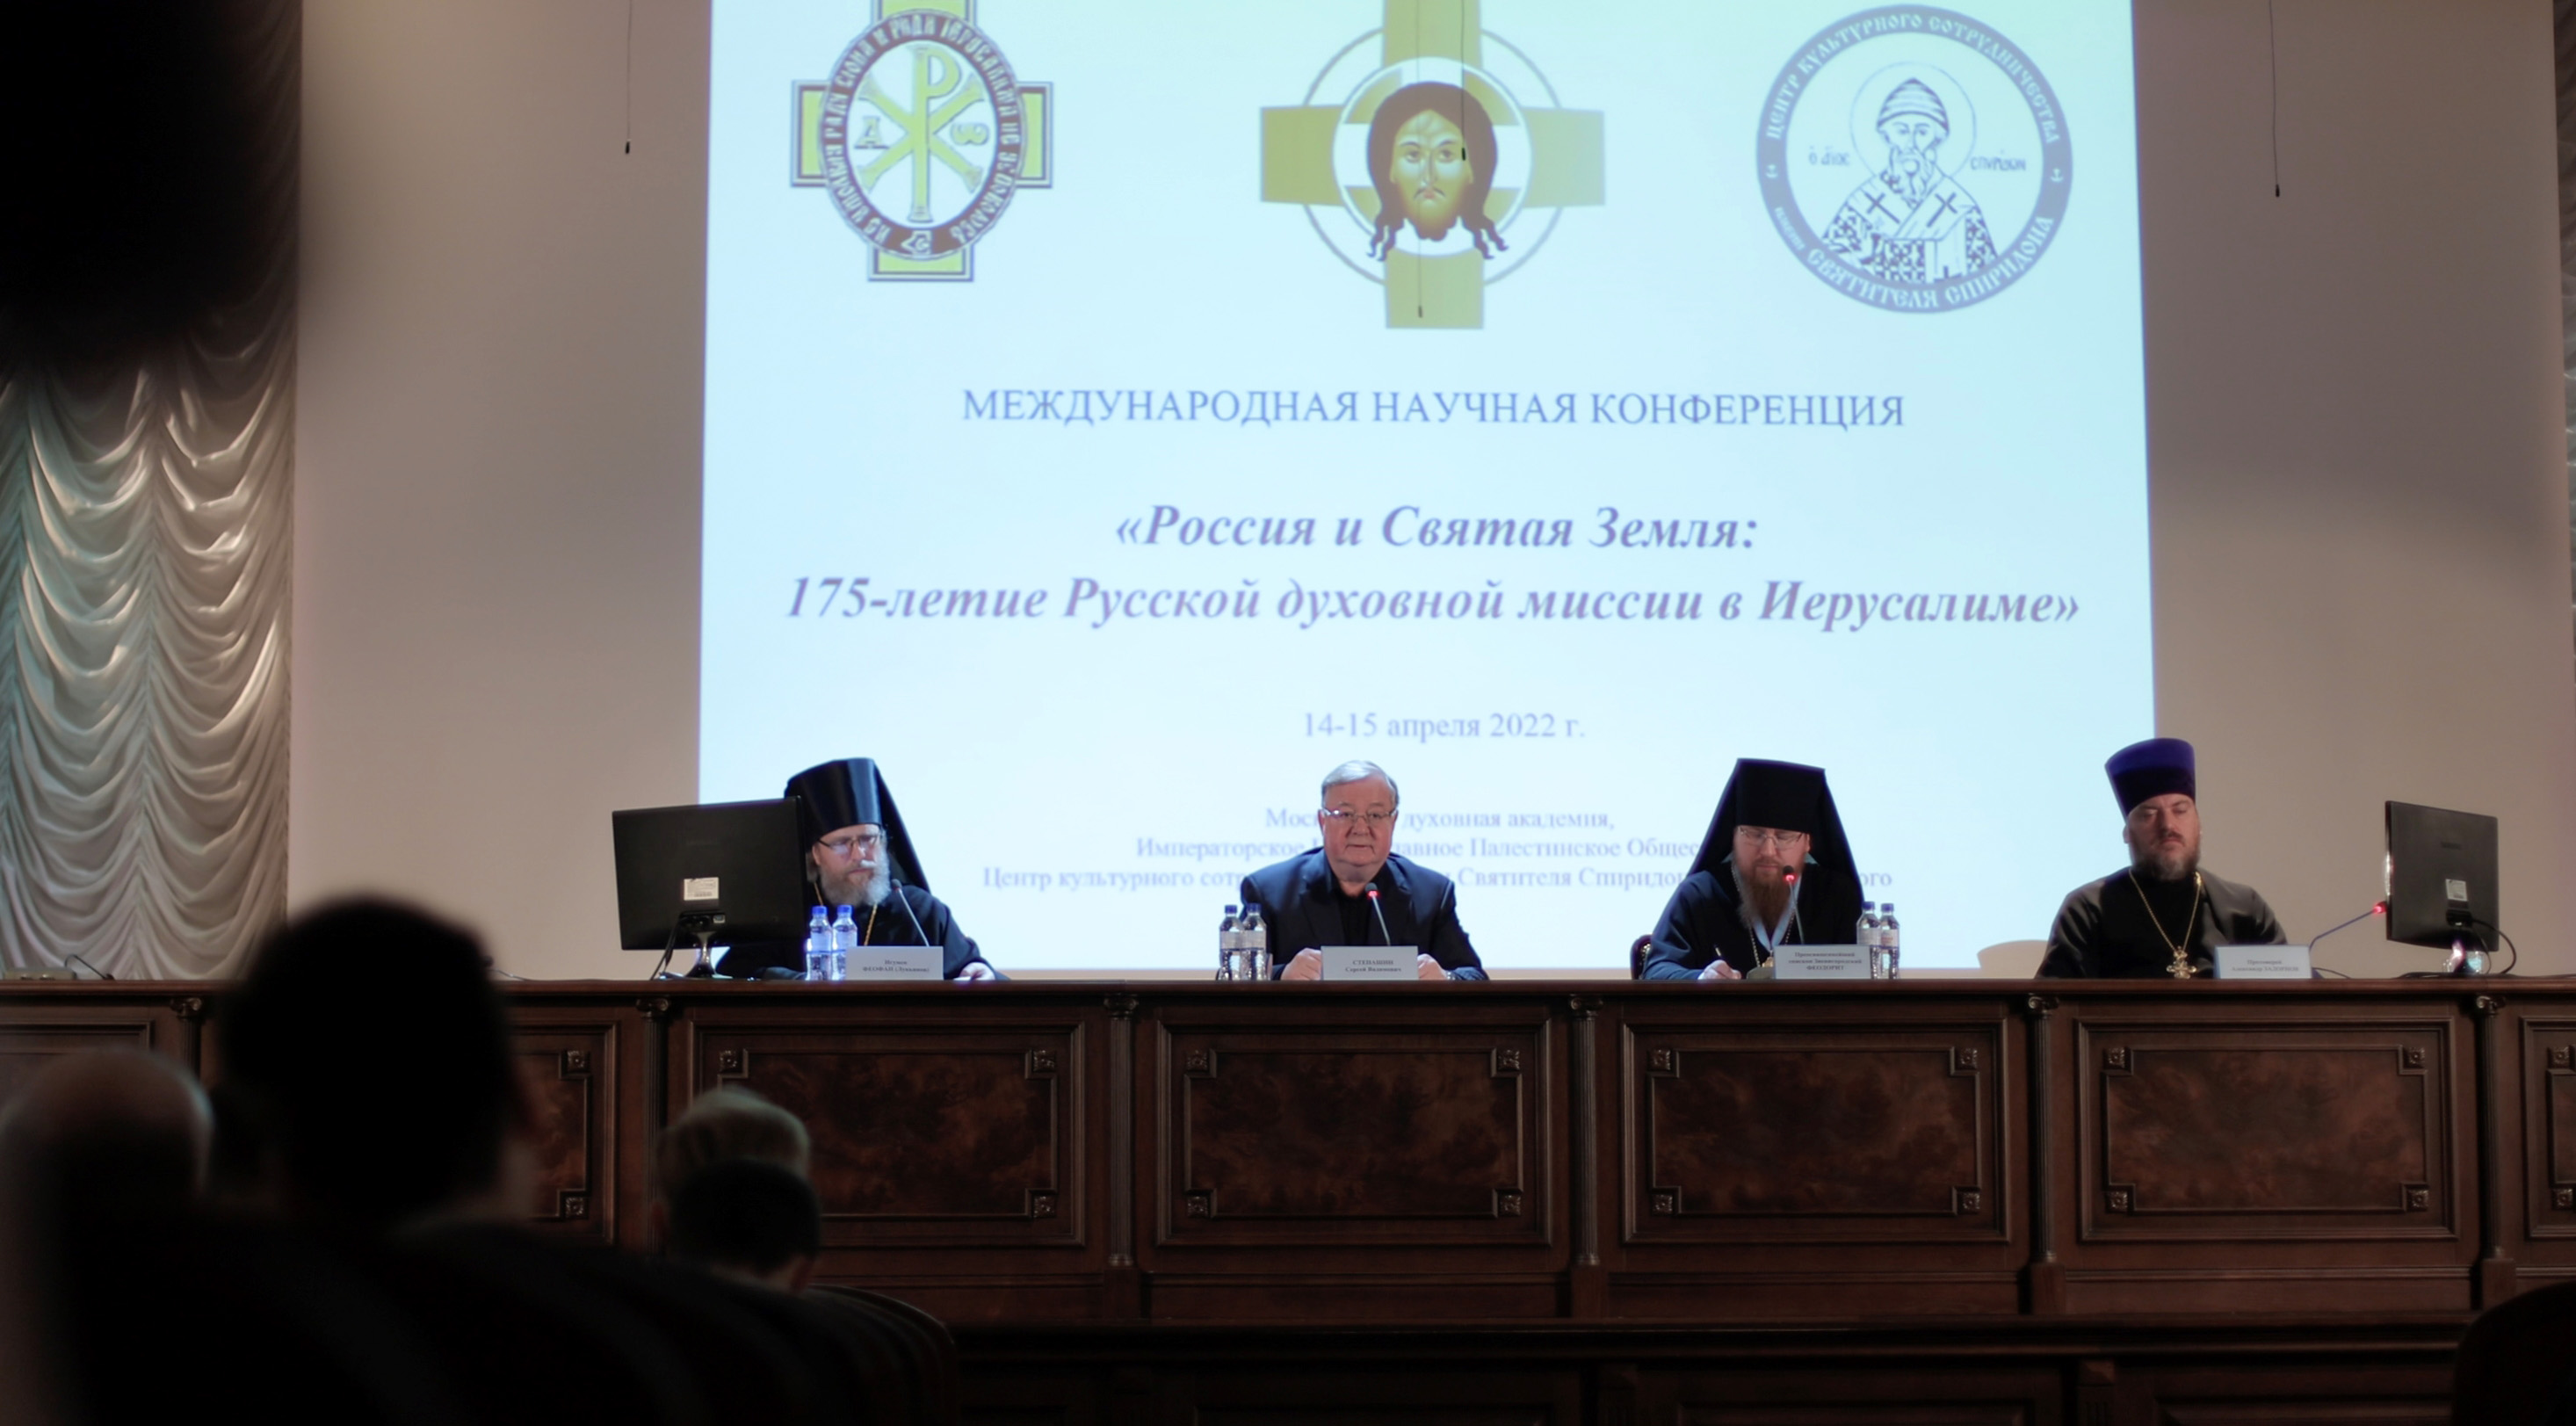 Конференция "Россия и святая Земля: 175-летие Русской духовной миссии в Иерусалиме"